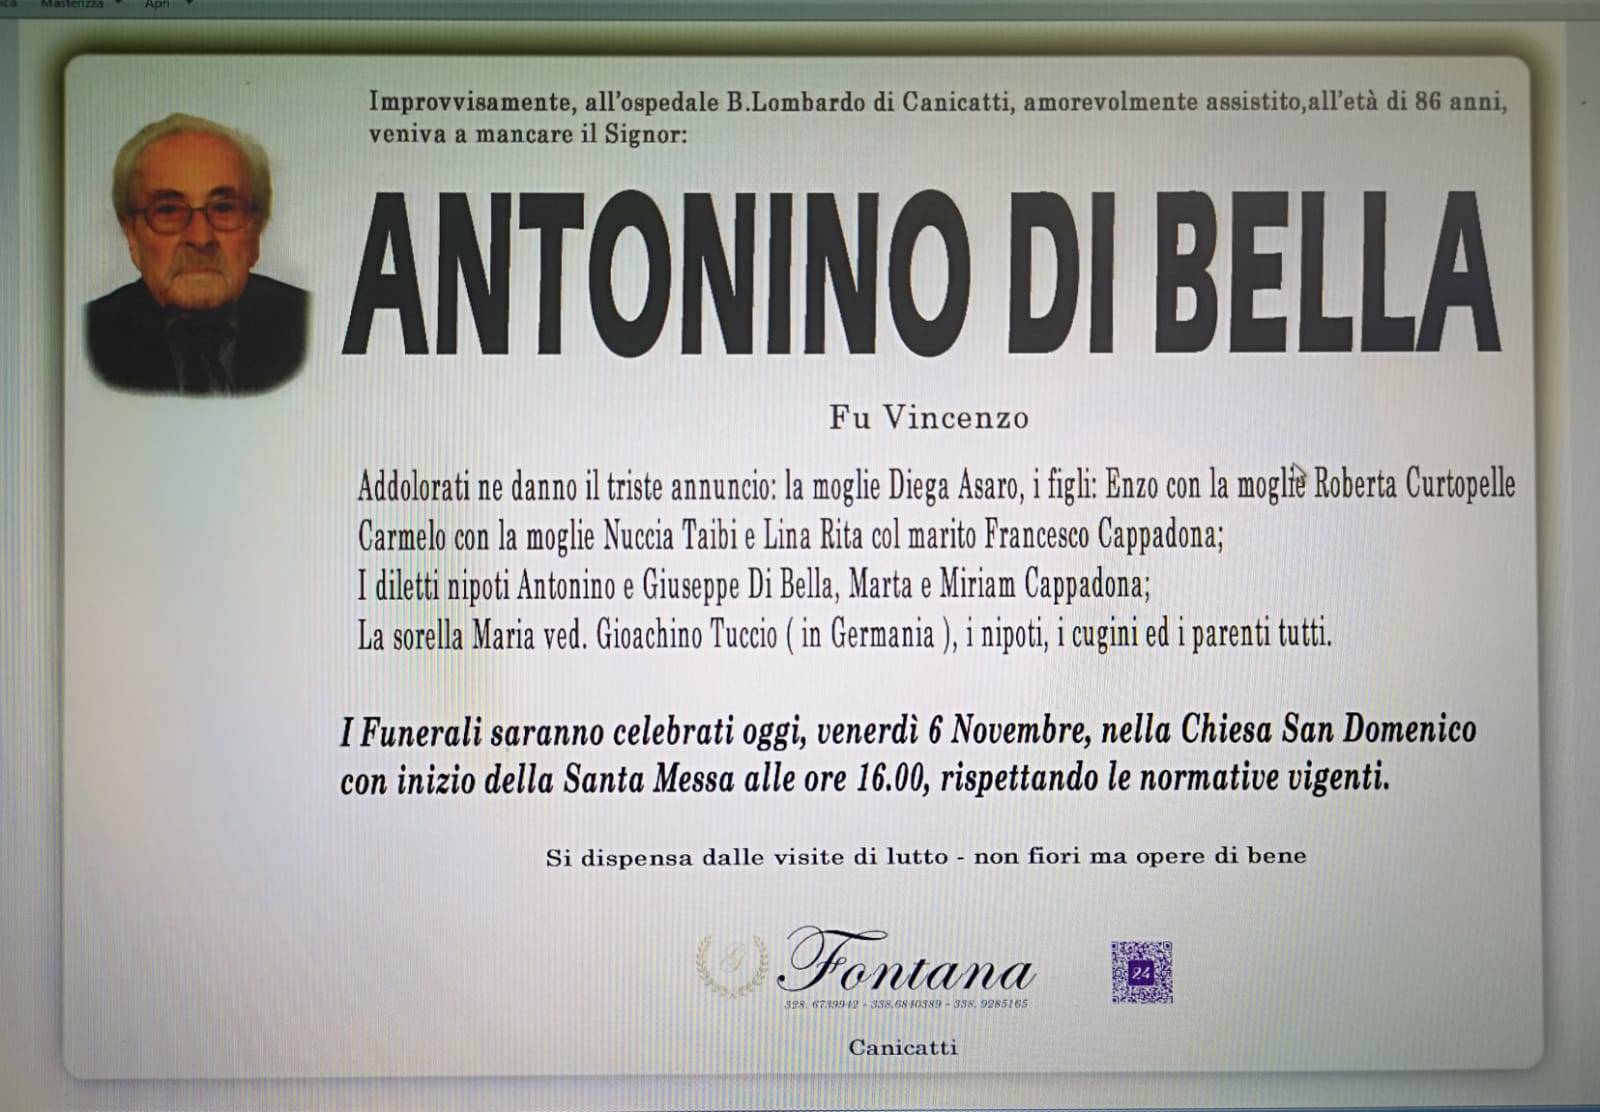 Antonino Di Bella